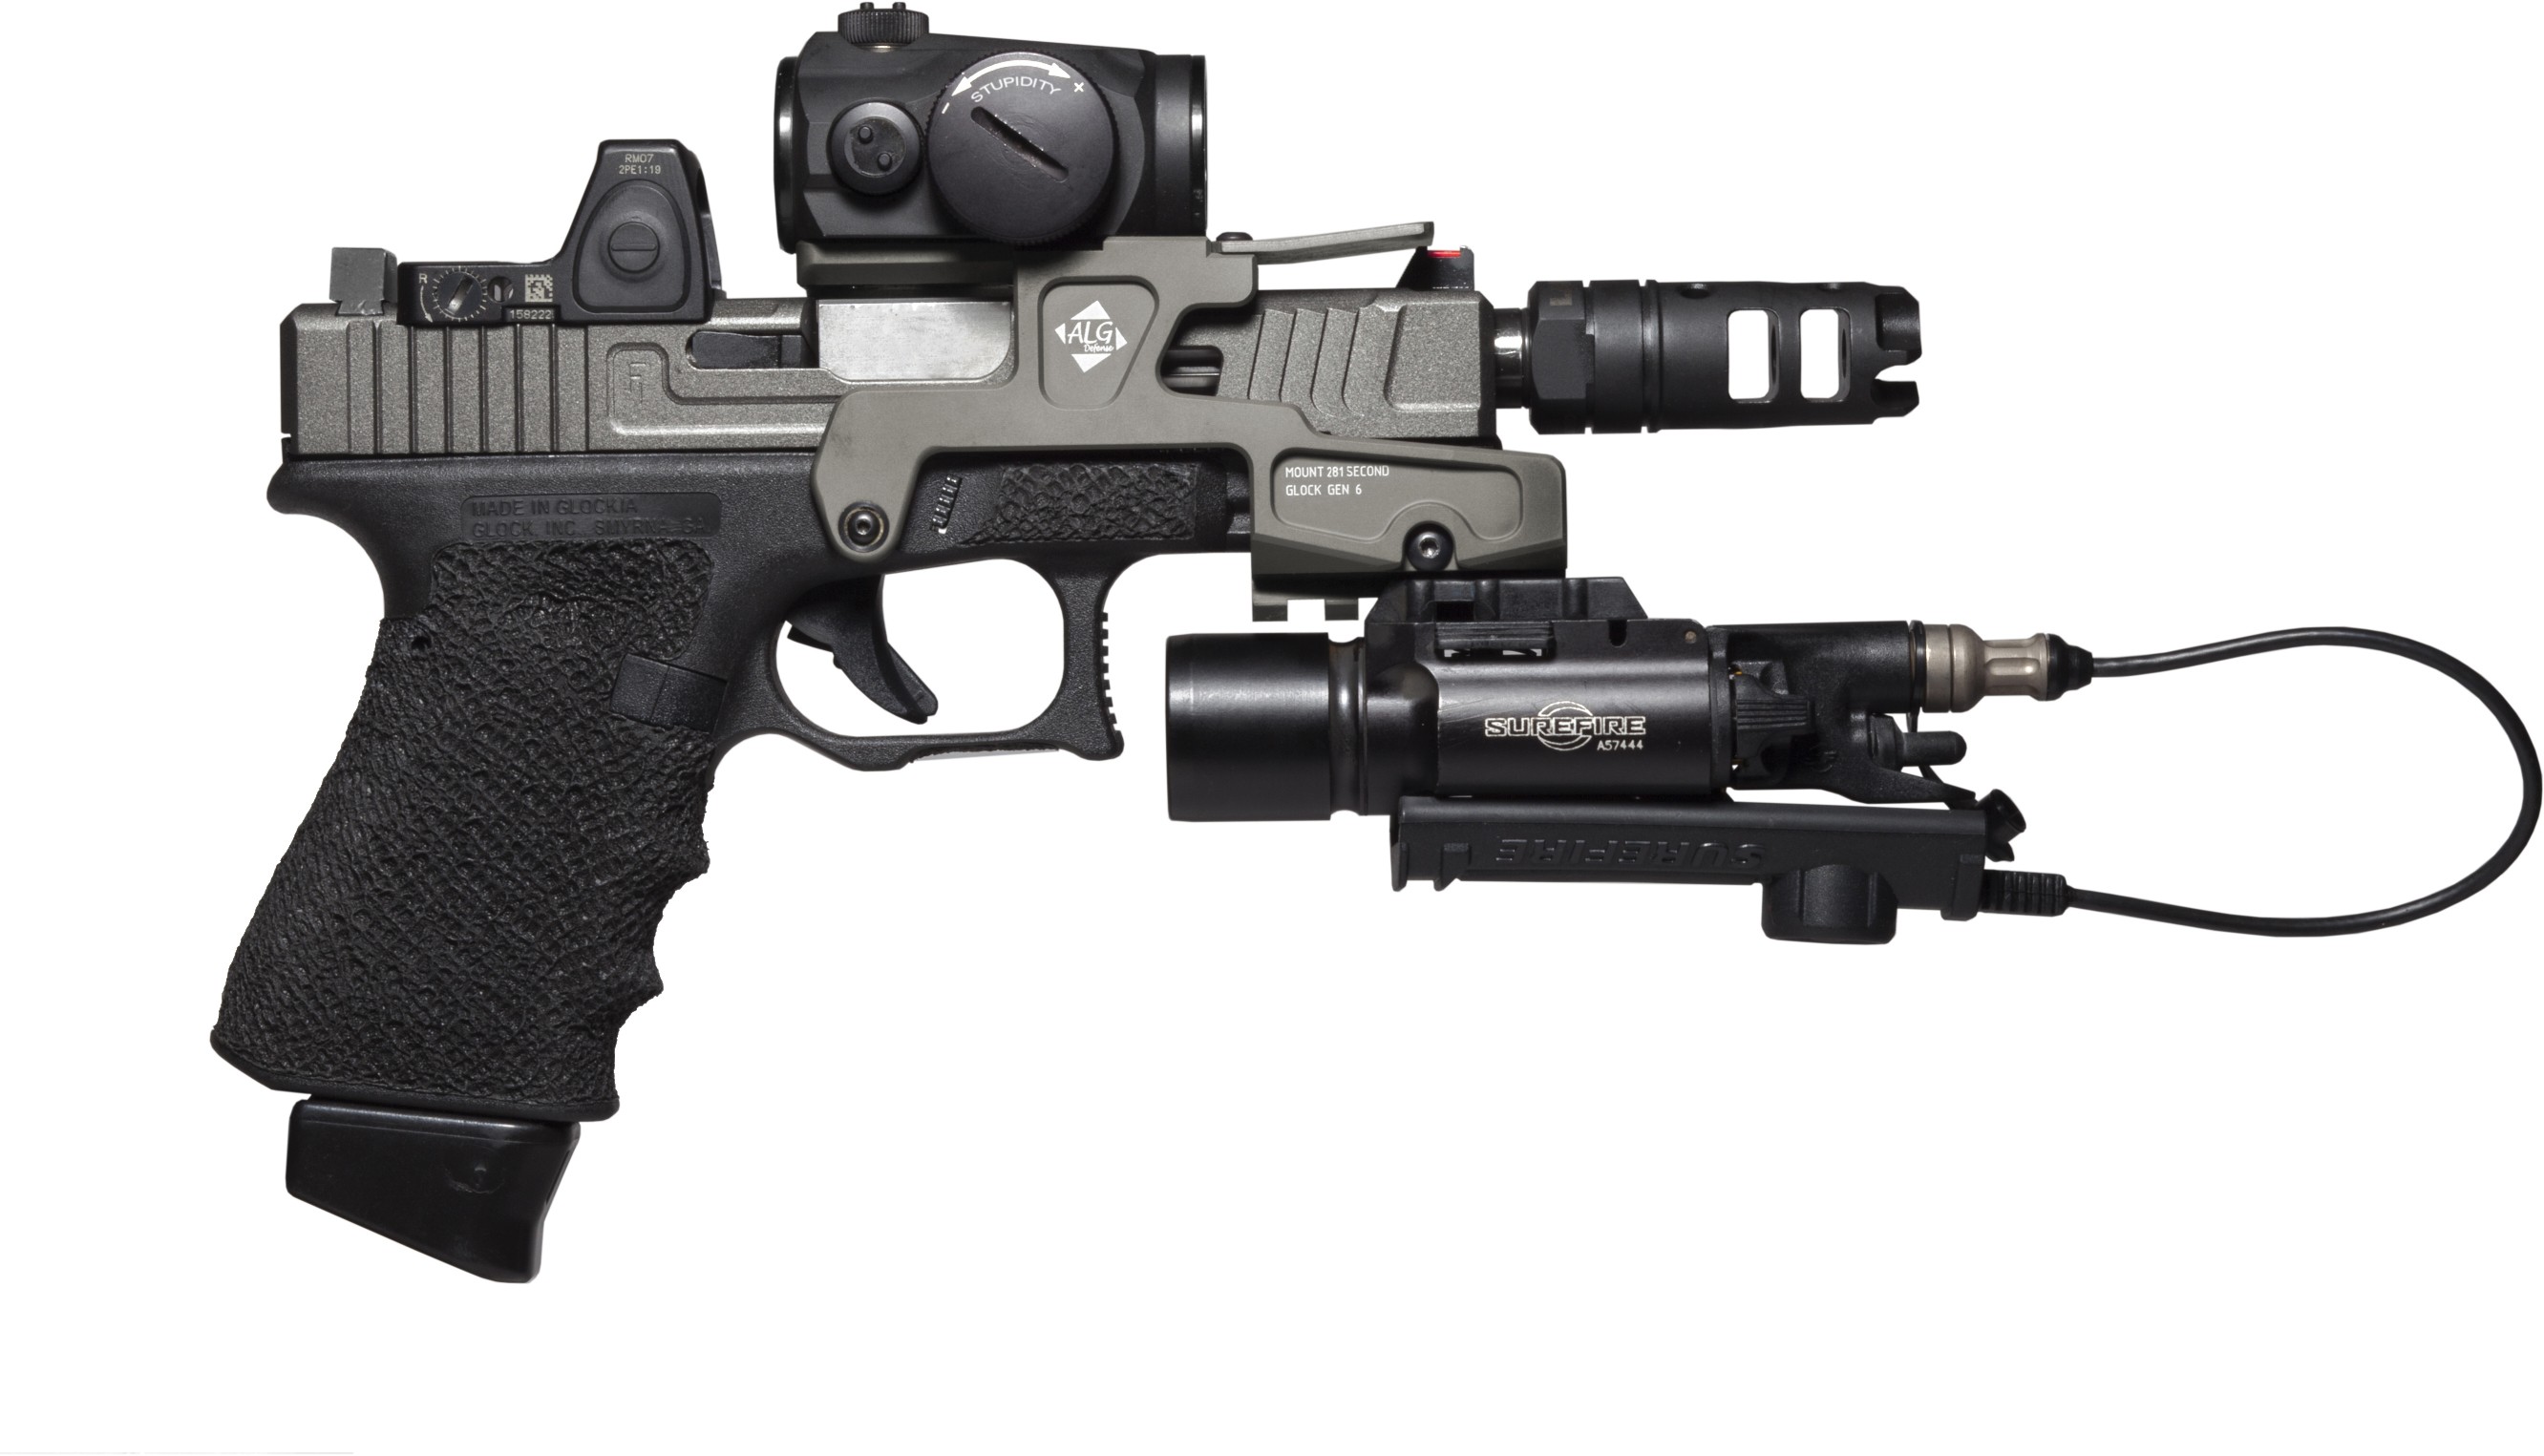 General 2664x1525 Glock 17 weapon simple background gun Glock pistol Austrian firearms